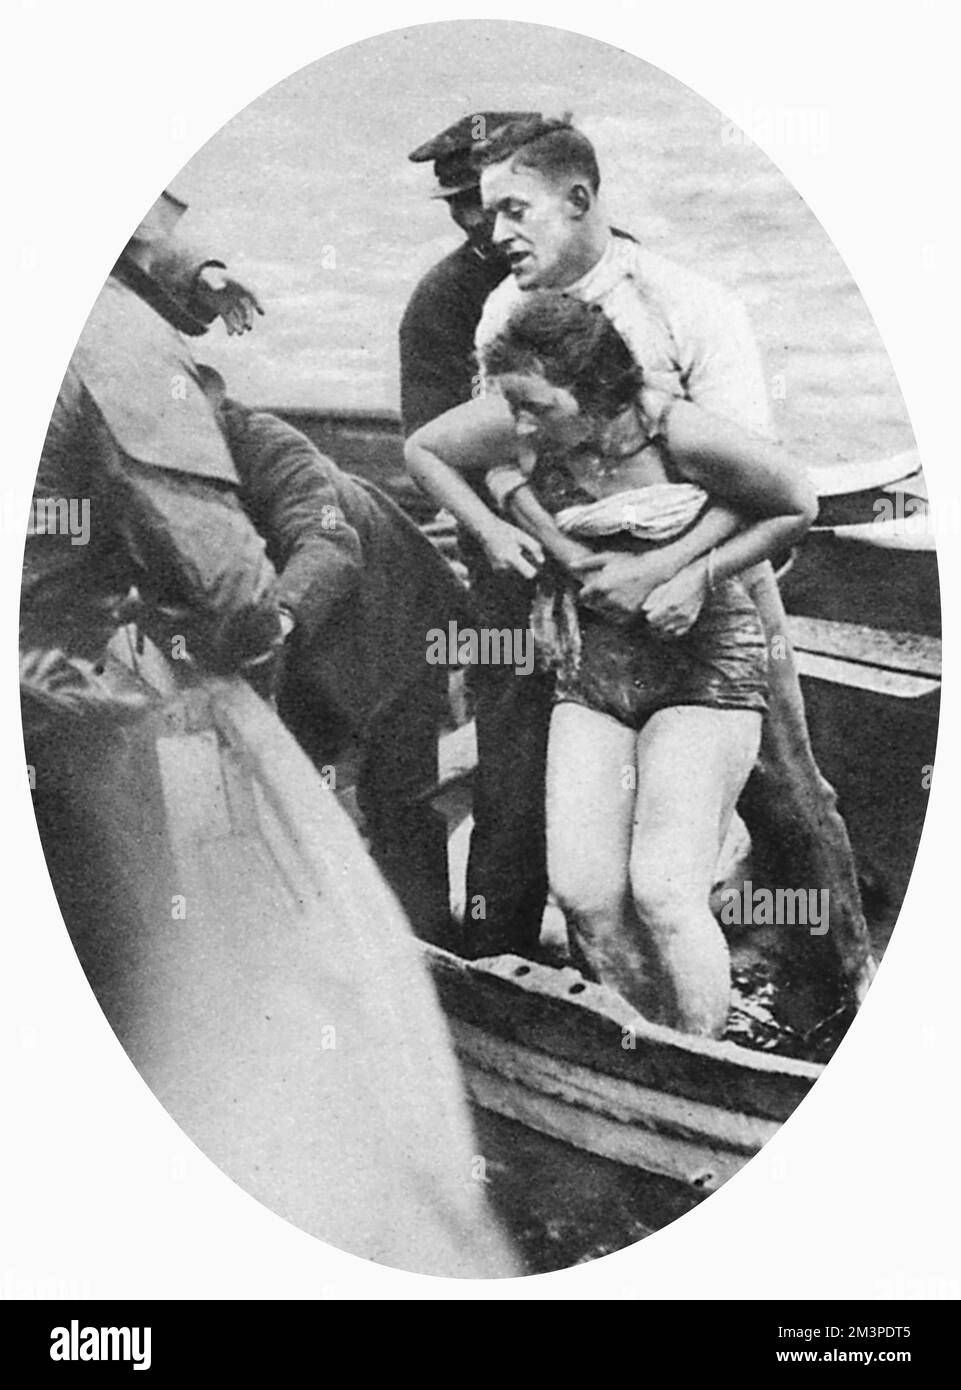 Mercedes Gleitzes zweites Schwimmen im Ärmelkanal wird gestoppt. Sie wird gegen ihren Willen aus dem Wasser gezogen. Datum: 1927 Stockfoto